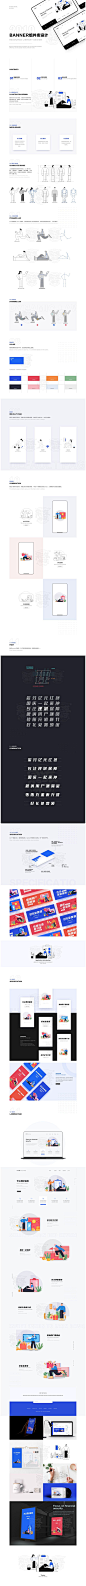 #果冻布丁6#品牌插画组件系统合集——2.0升级版